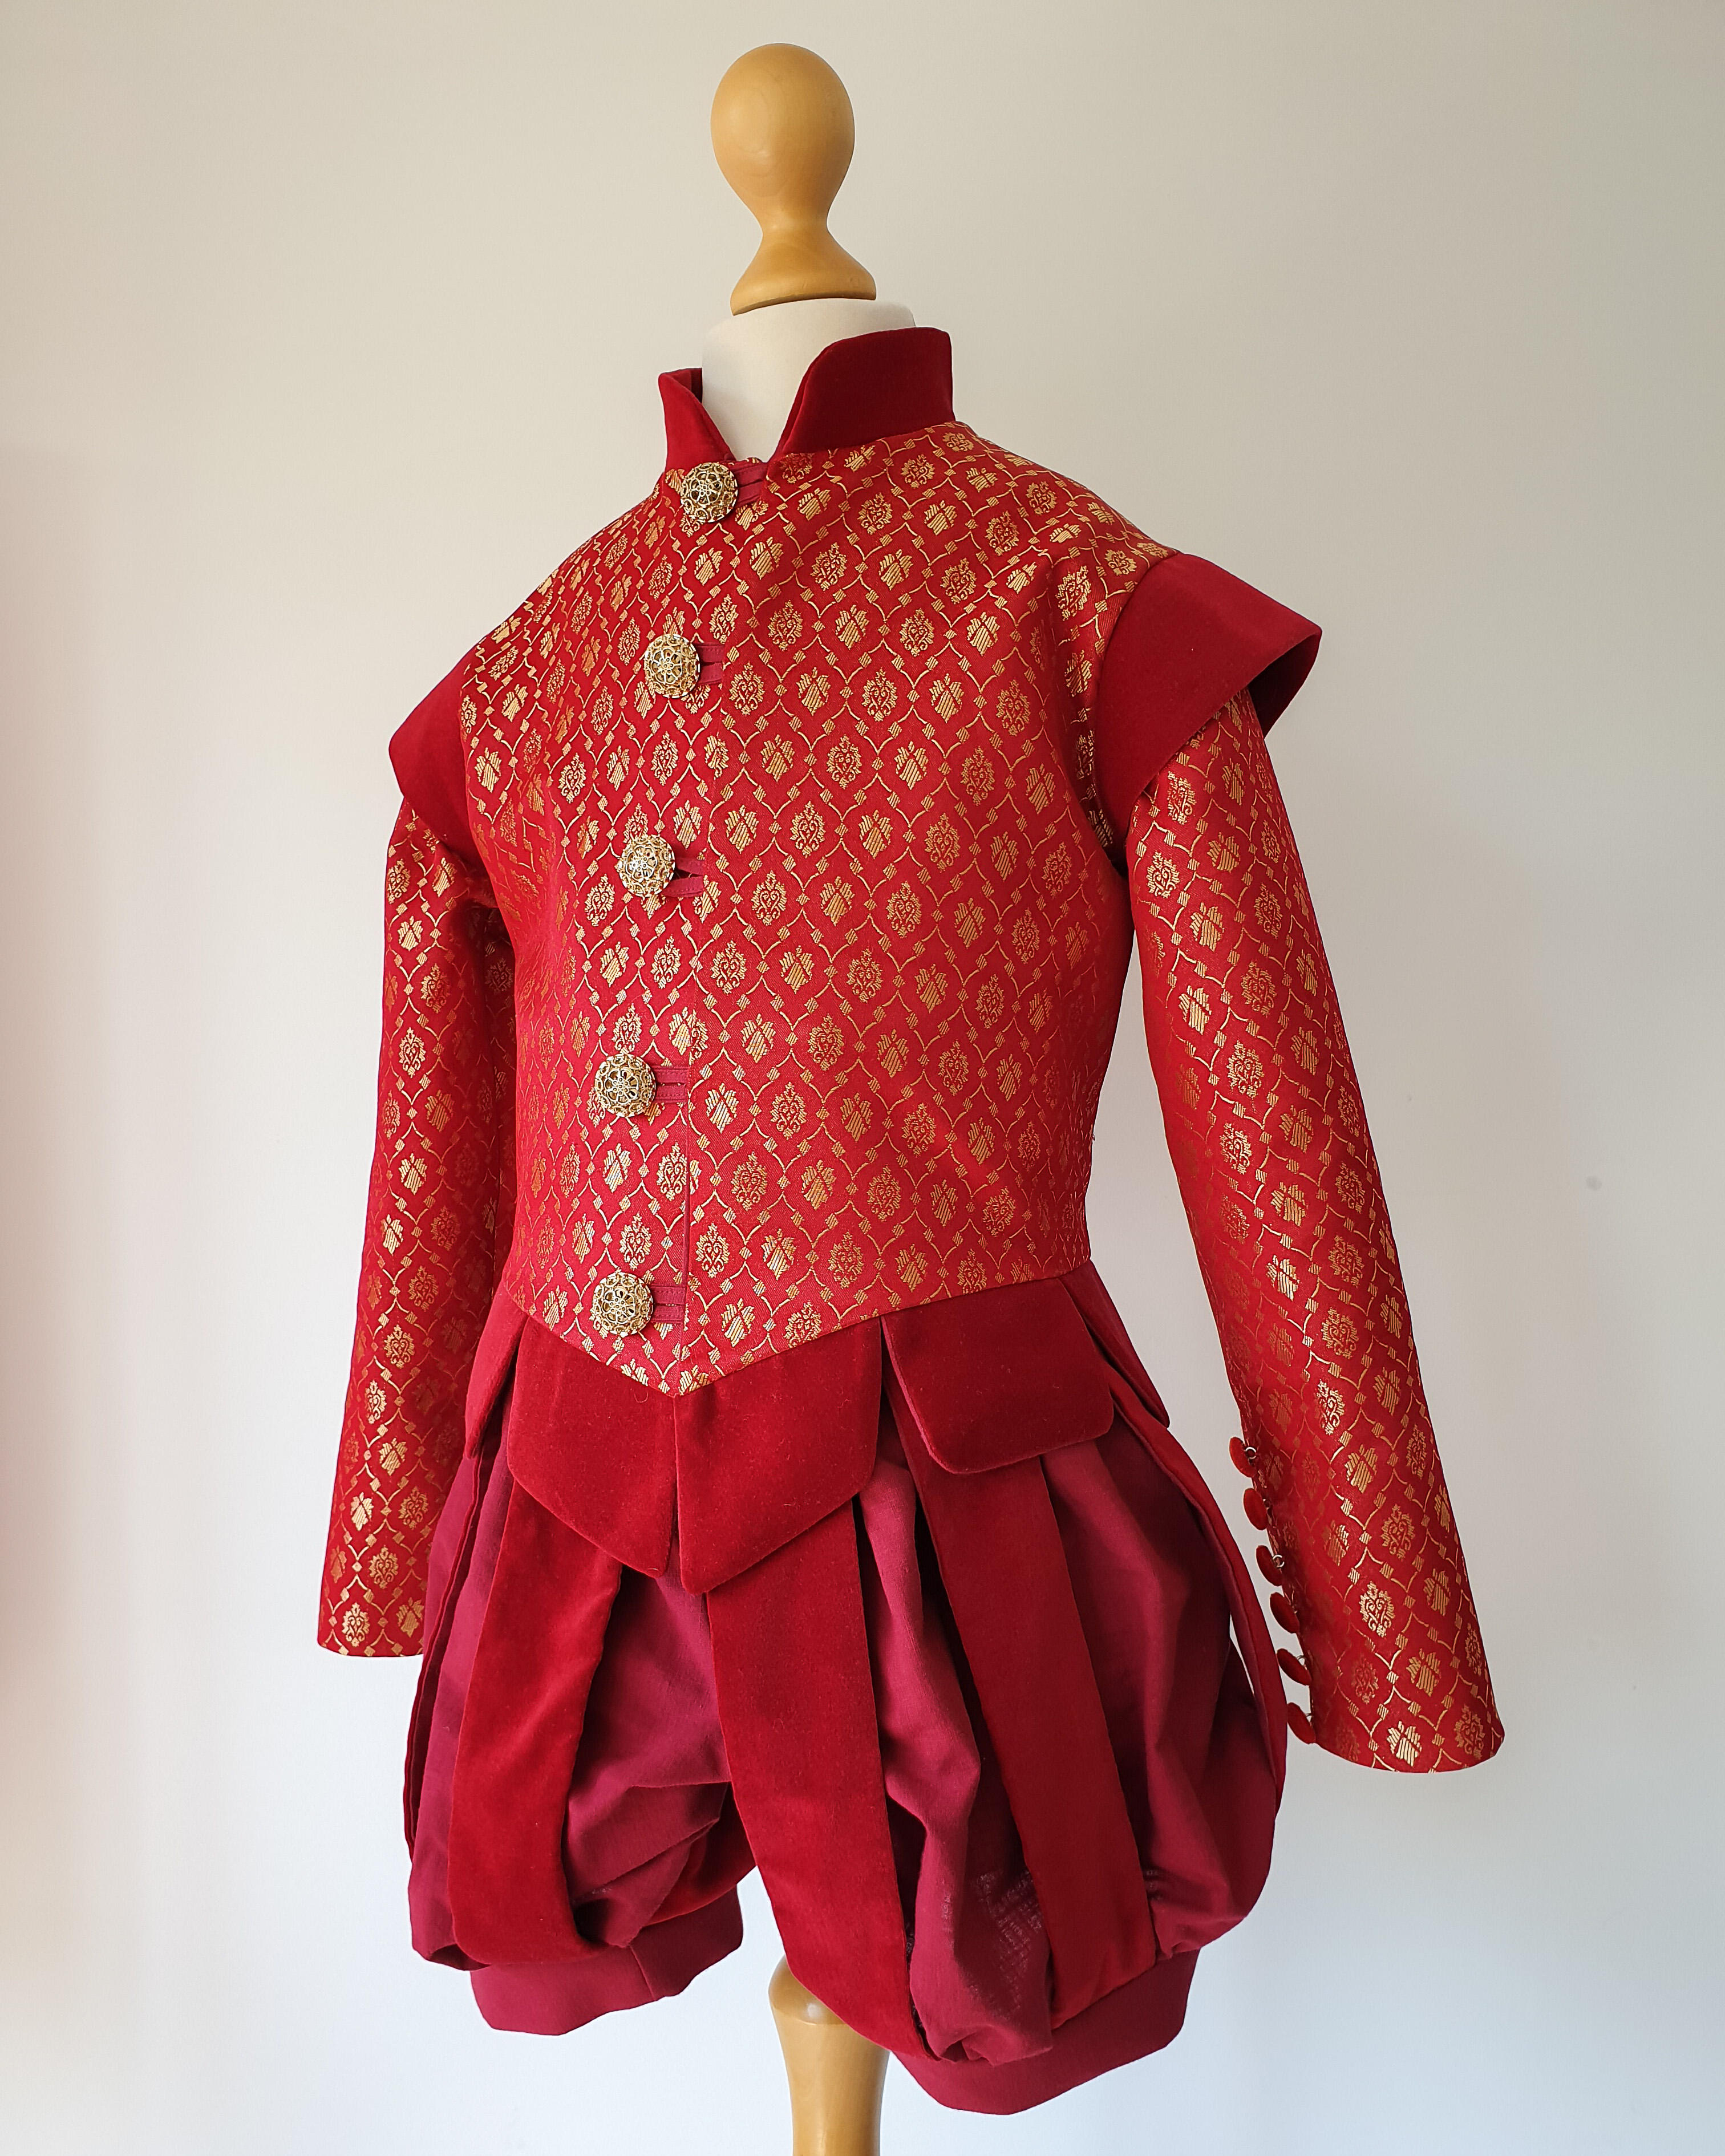 Costume de lansquenet Tudor en brocart ou en velours pour un déguisement médiéval ou pour Halloween